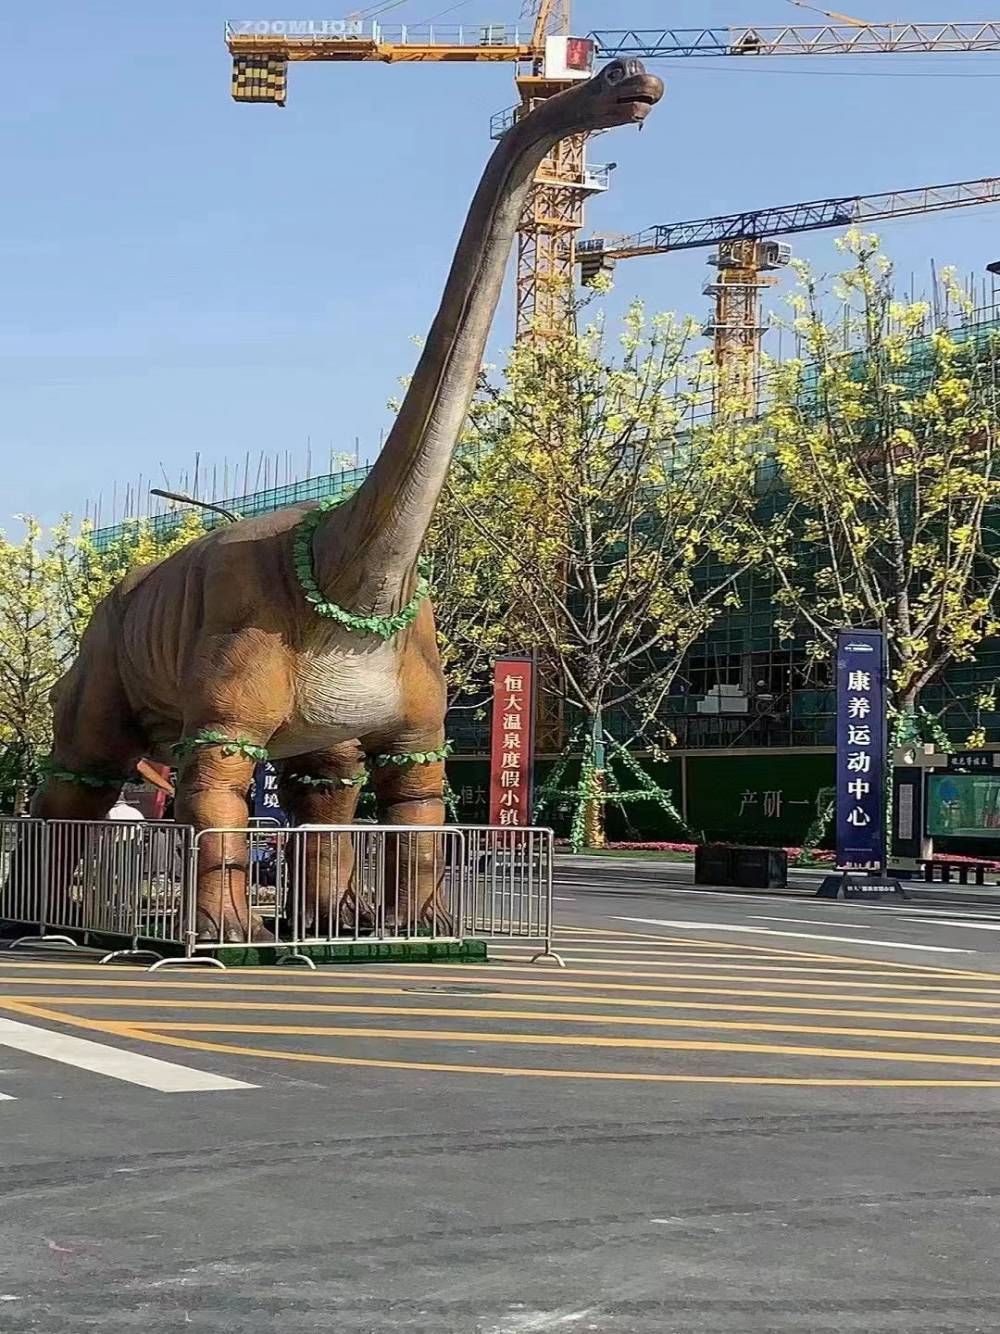 侏罗纪大型仿真恐龙模型出租出售 高品质动物模型租赁